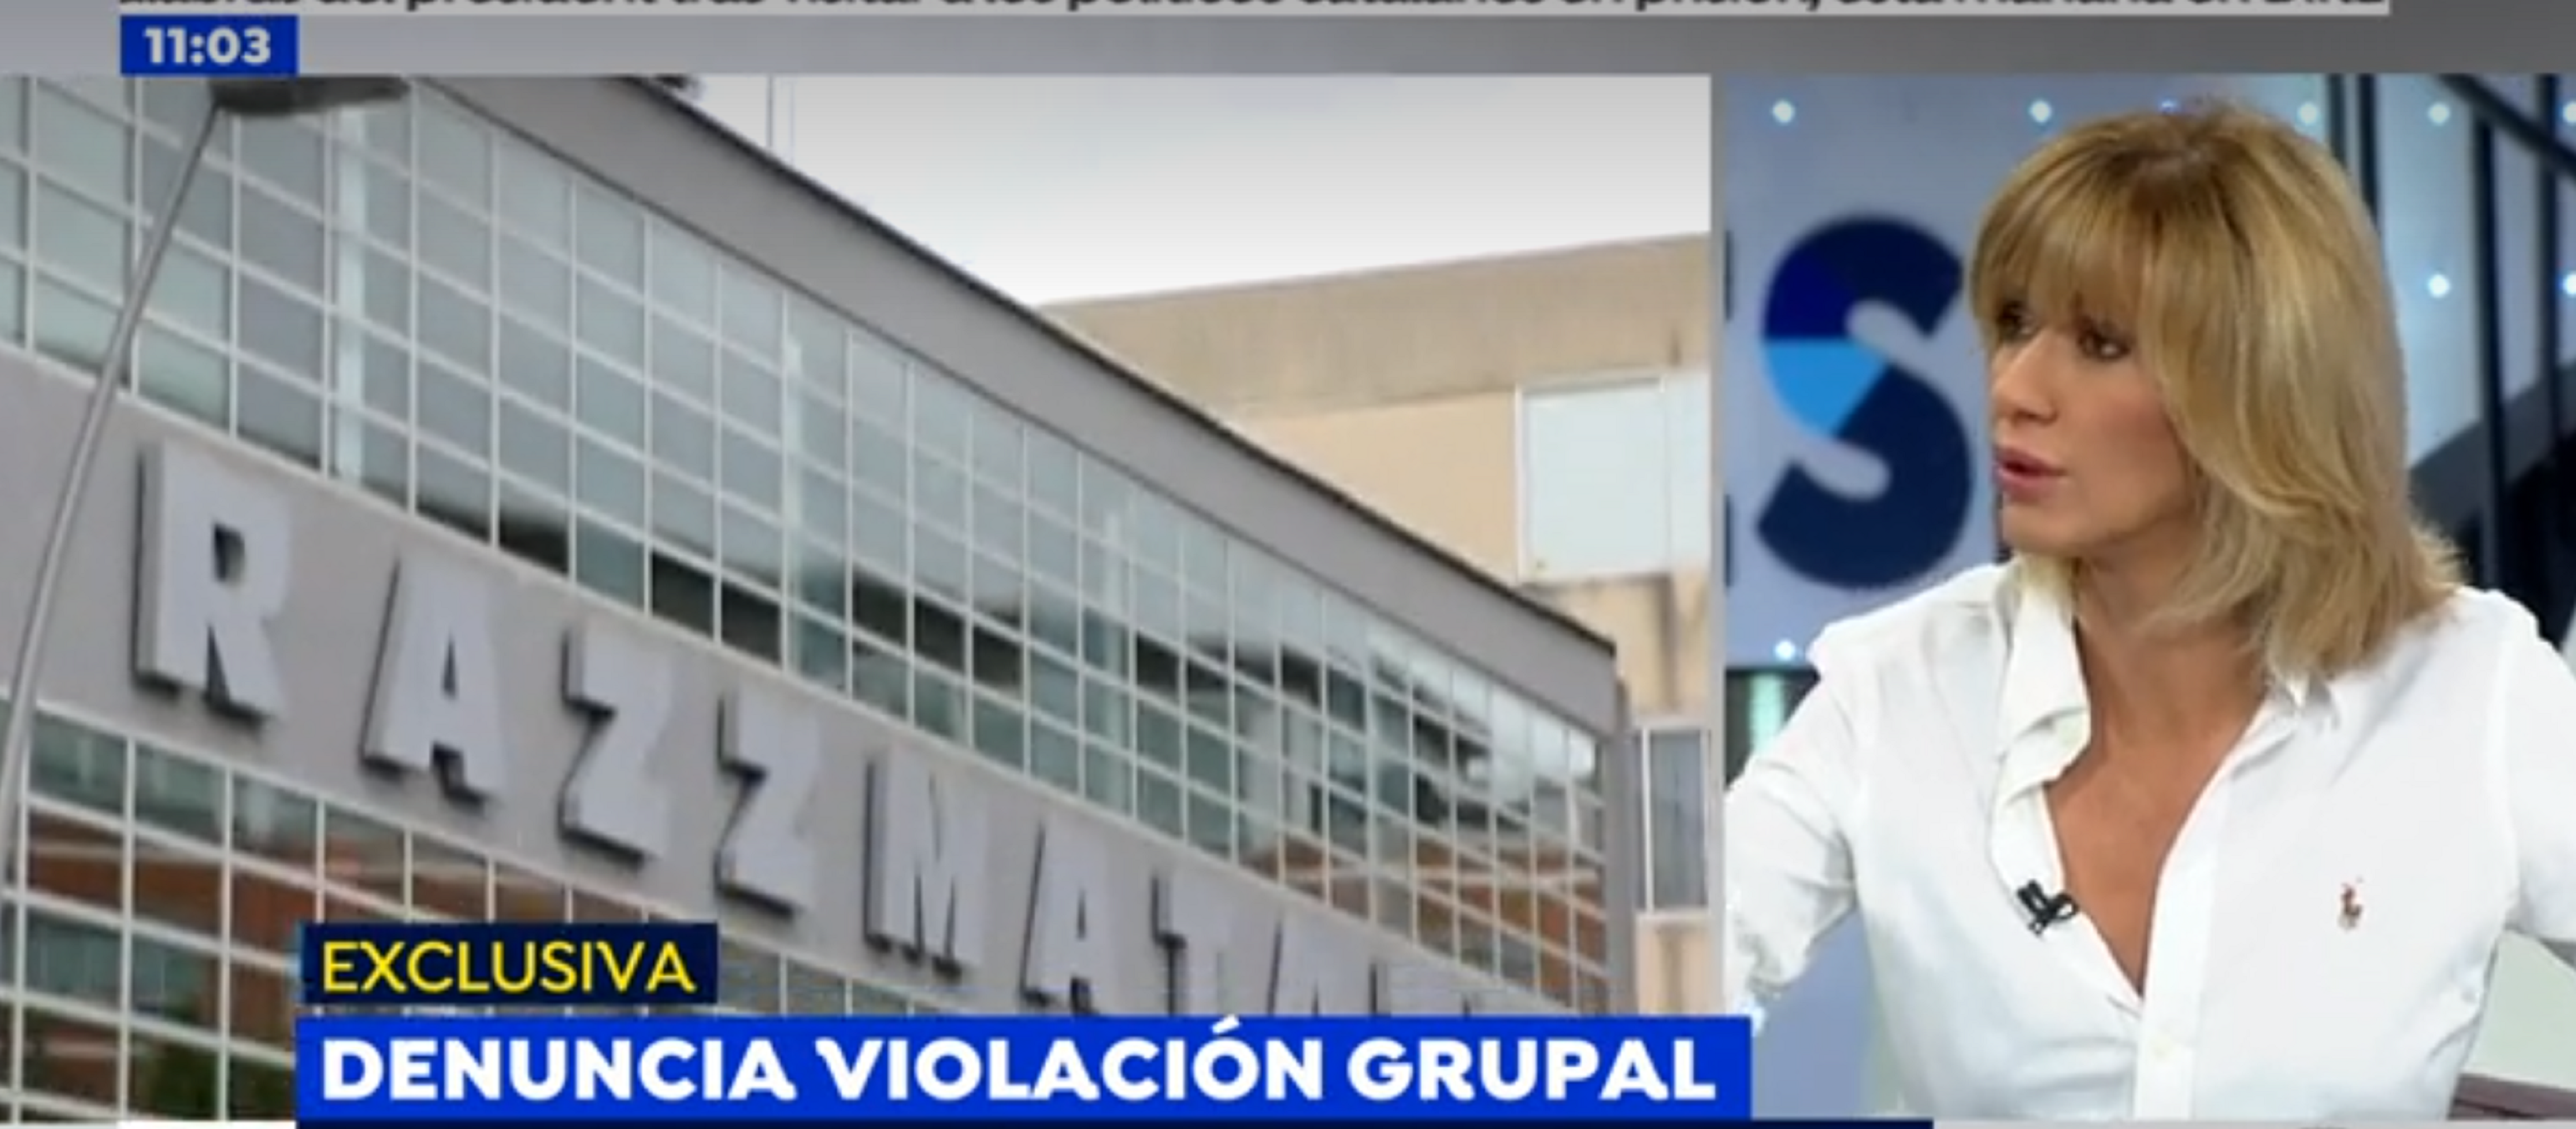 Antena 3 assenyala la menor de Razzmatazz:  té 5 denúncies falses de violació